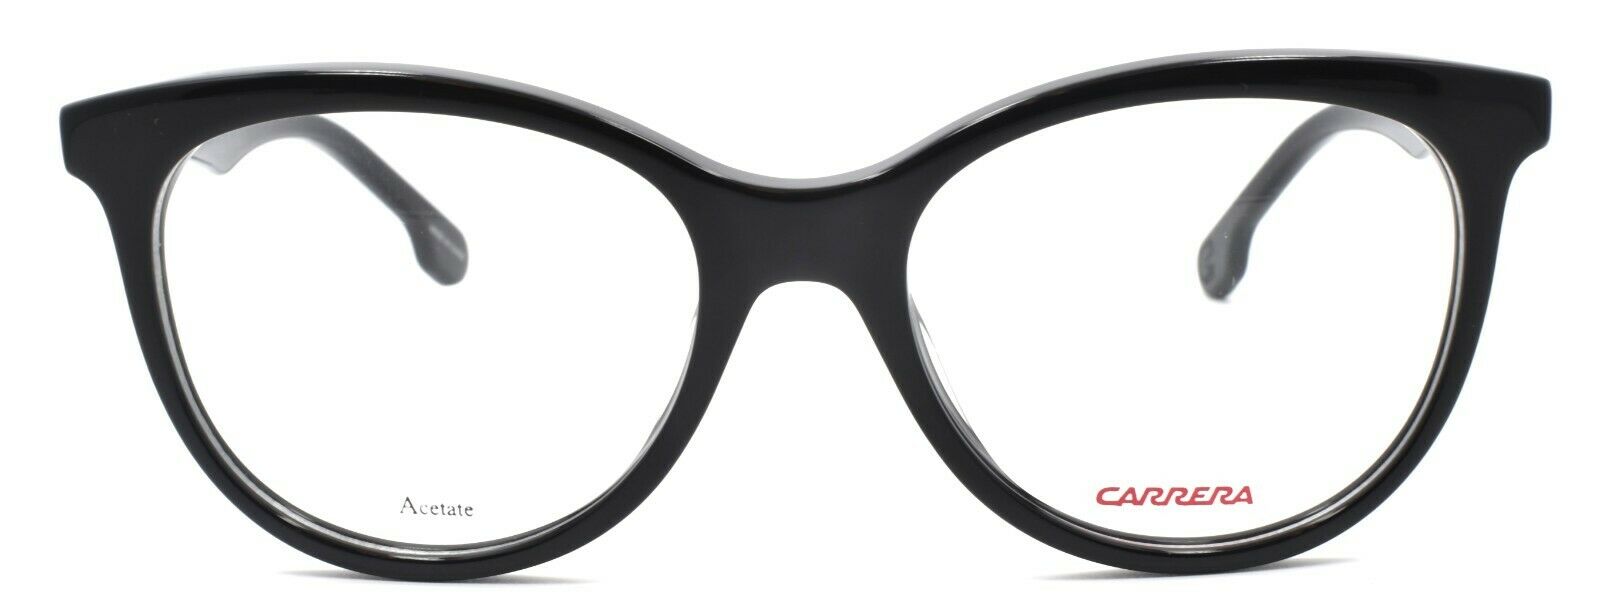 2-Carrera CA5545/V 807 Women's Eyeglasses Frames 52-18-140 Black + CASE-762753606198-IKSpecs